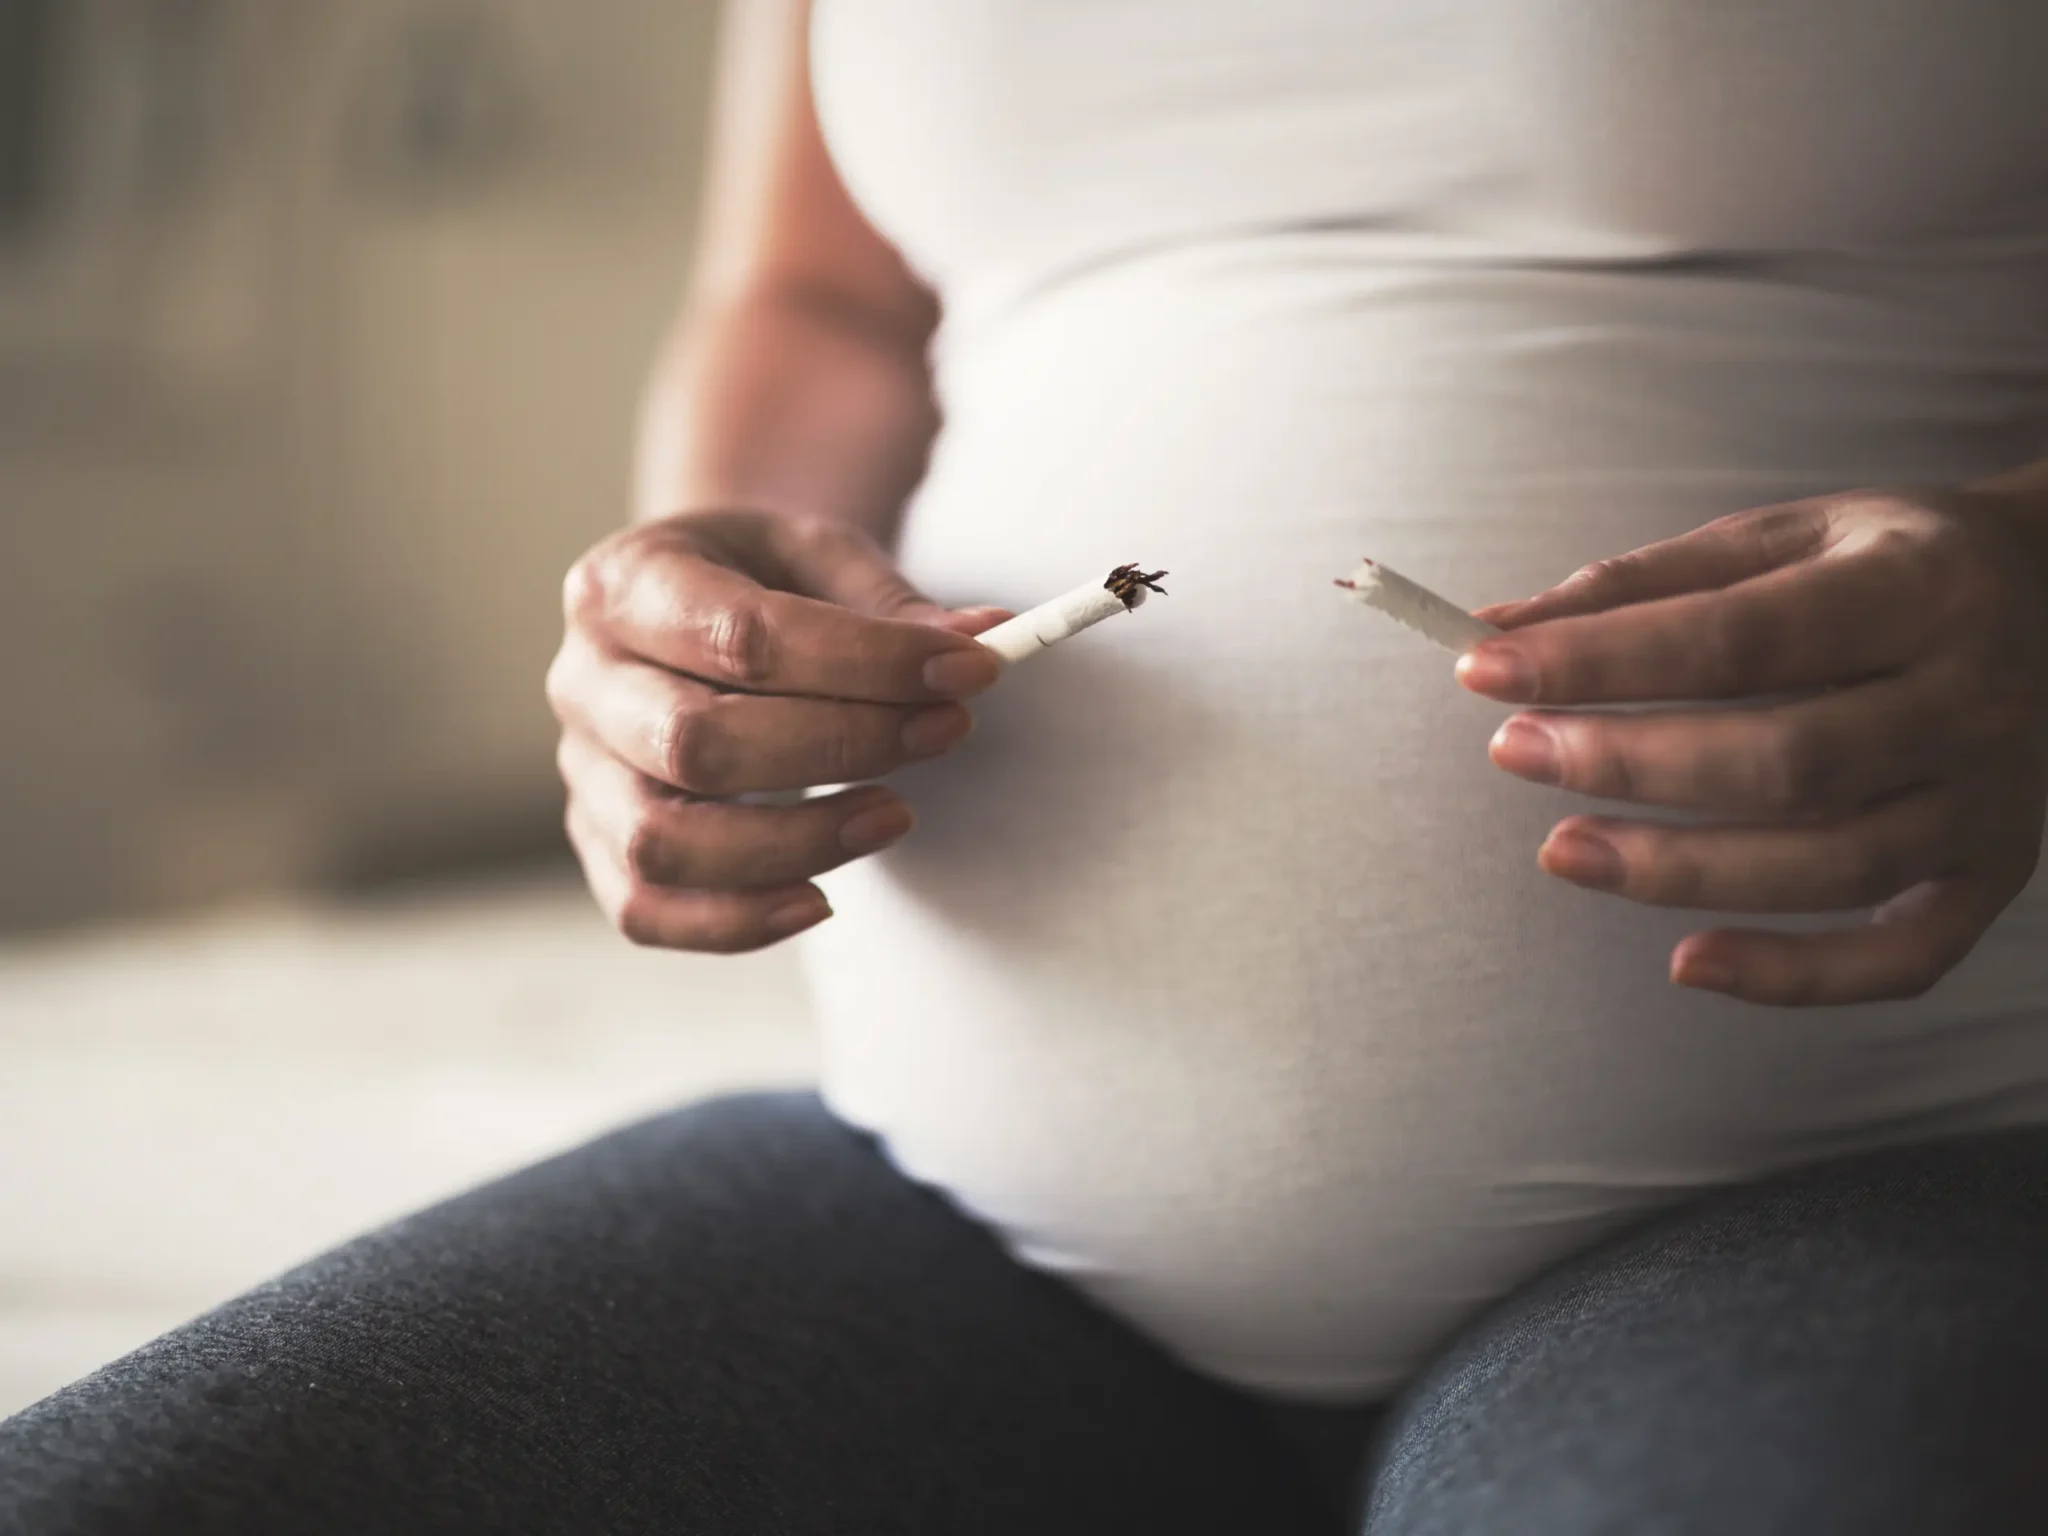 donna in gravidanza che spezza una sigaretta, evitare il fumo in gravidanza per evitare conseguenze dannose